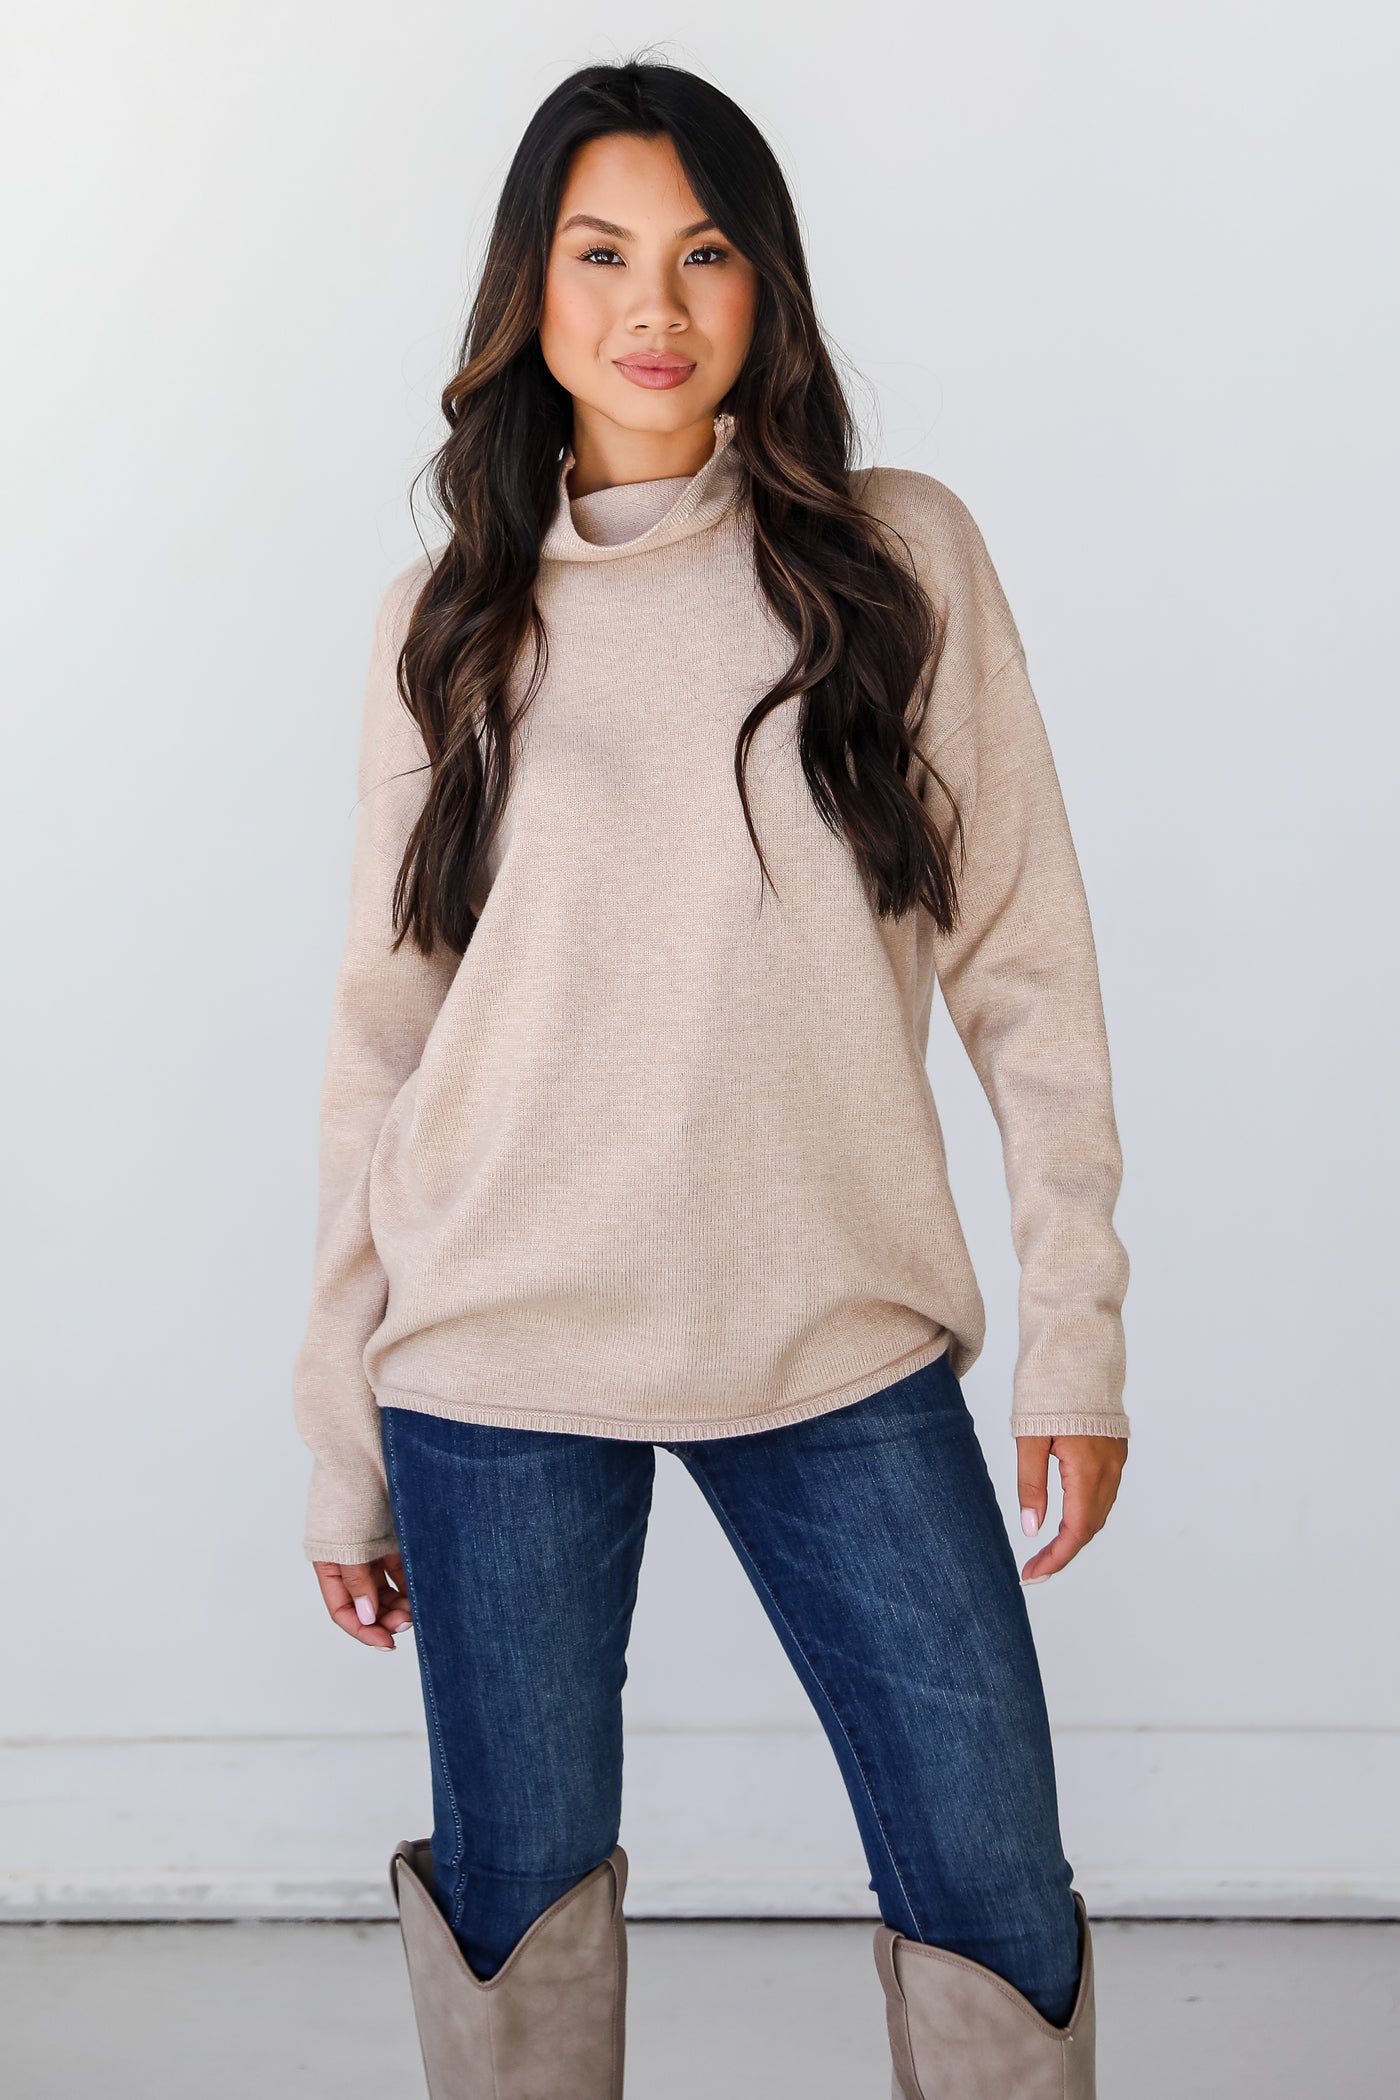 oatmeal Sweater on model